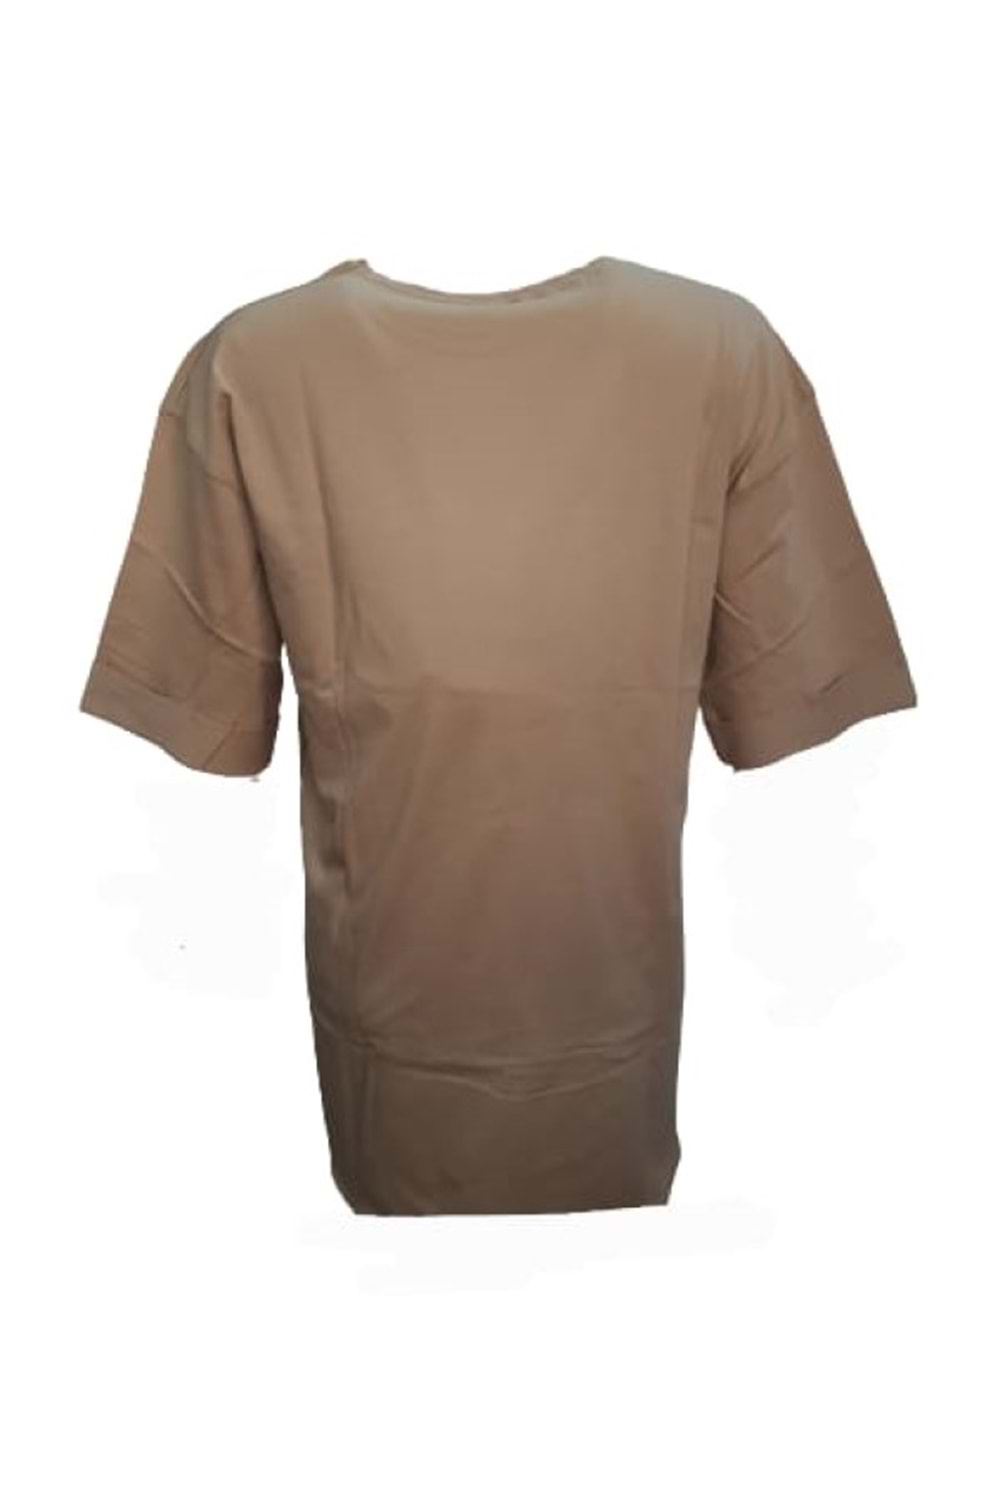 Kuzey Kadın Baskılı Yırtmaçlı Oversize Kadın T-Shirt 301 - Bej - L